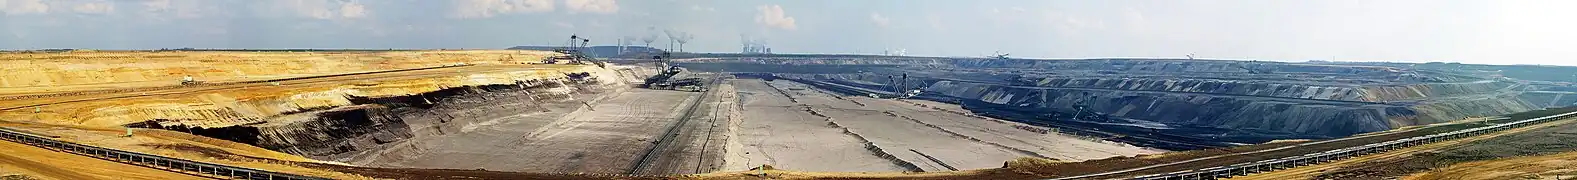 Production d'énergie fossile à partir de lignite dans le Bassin rhénan ; au premier plan la mine de lignite à ciel ouvert de Garzweiler et à l'arrière-plan des centrales au lignite et des lignes à haute tension.